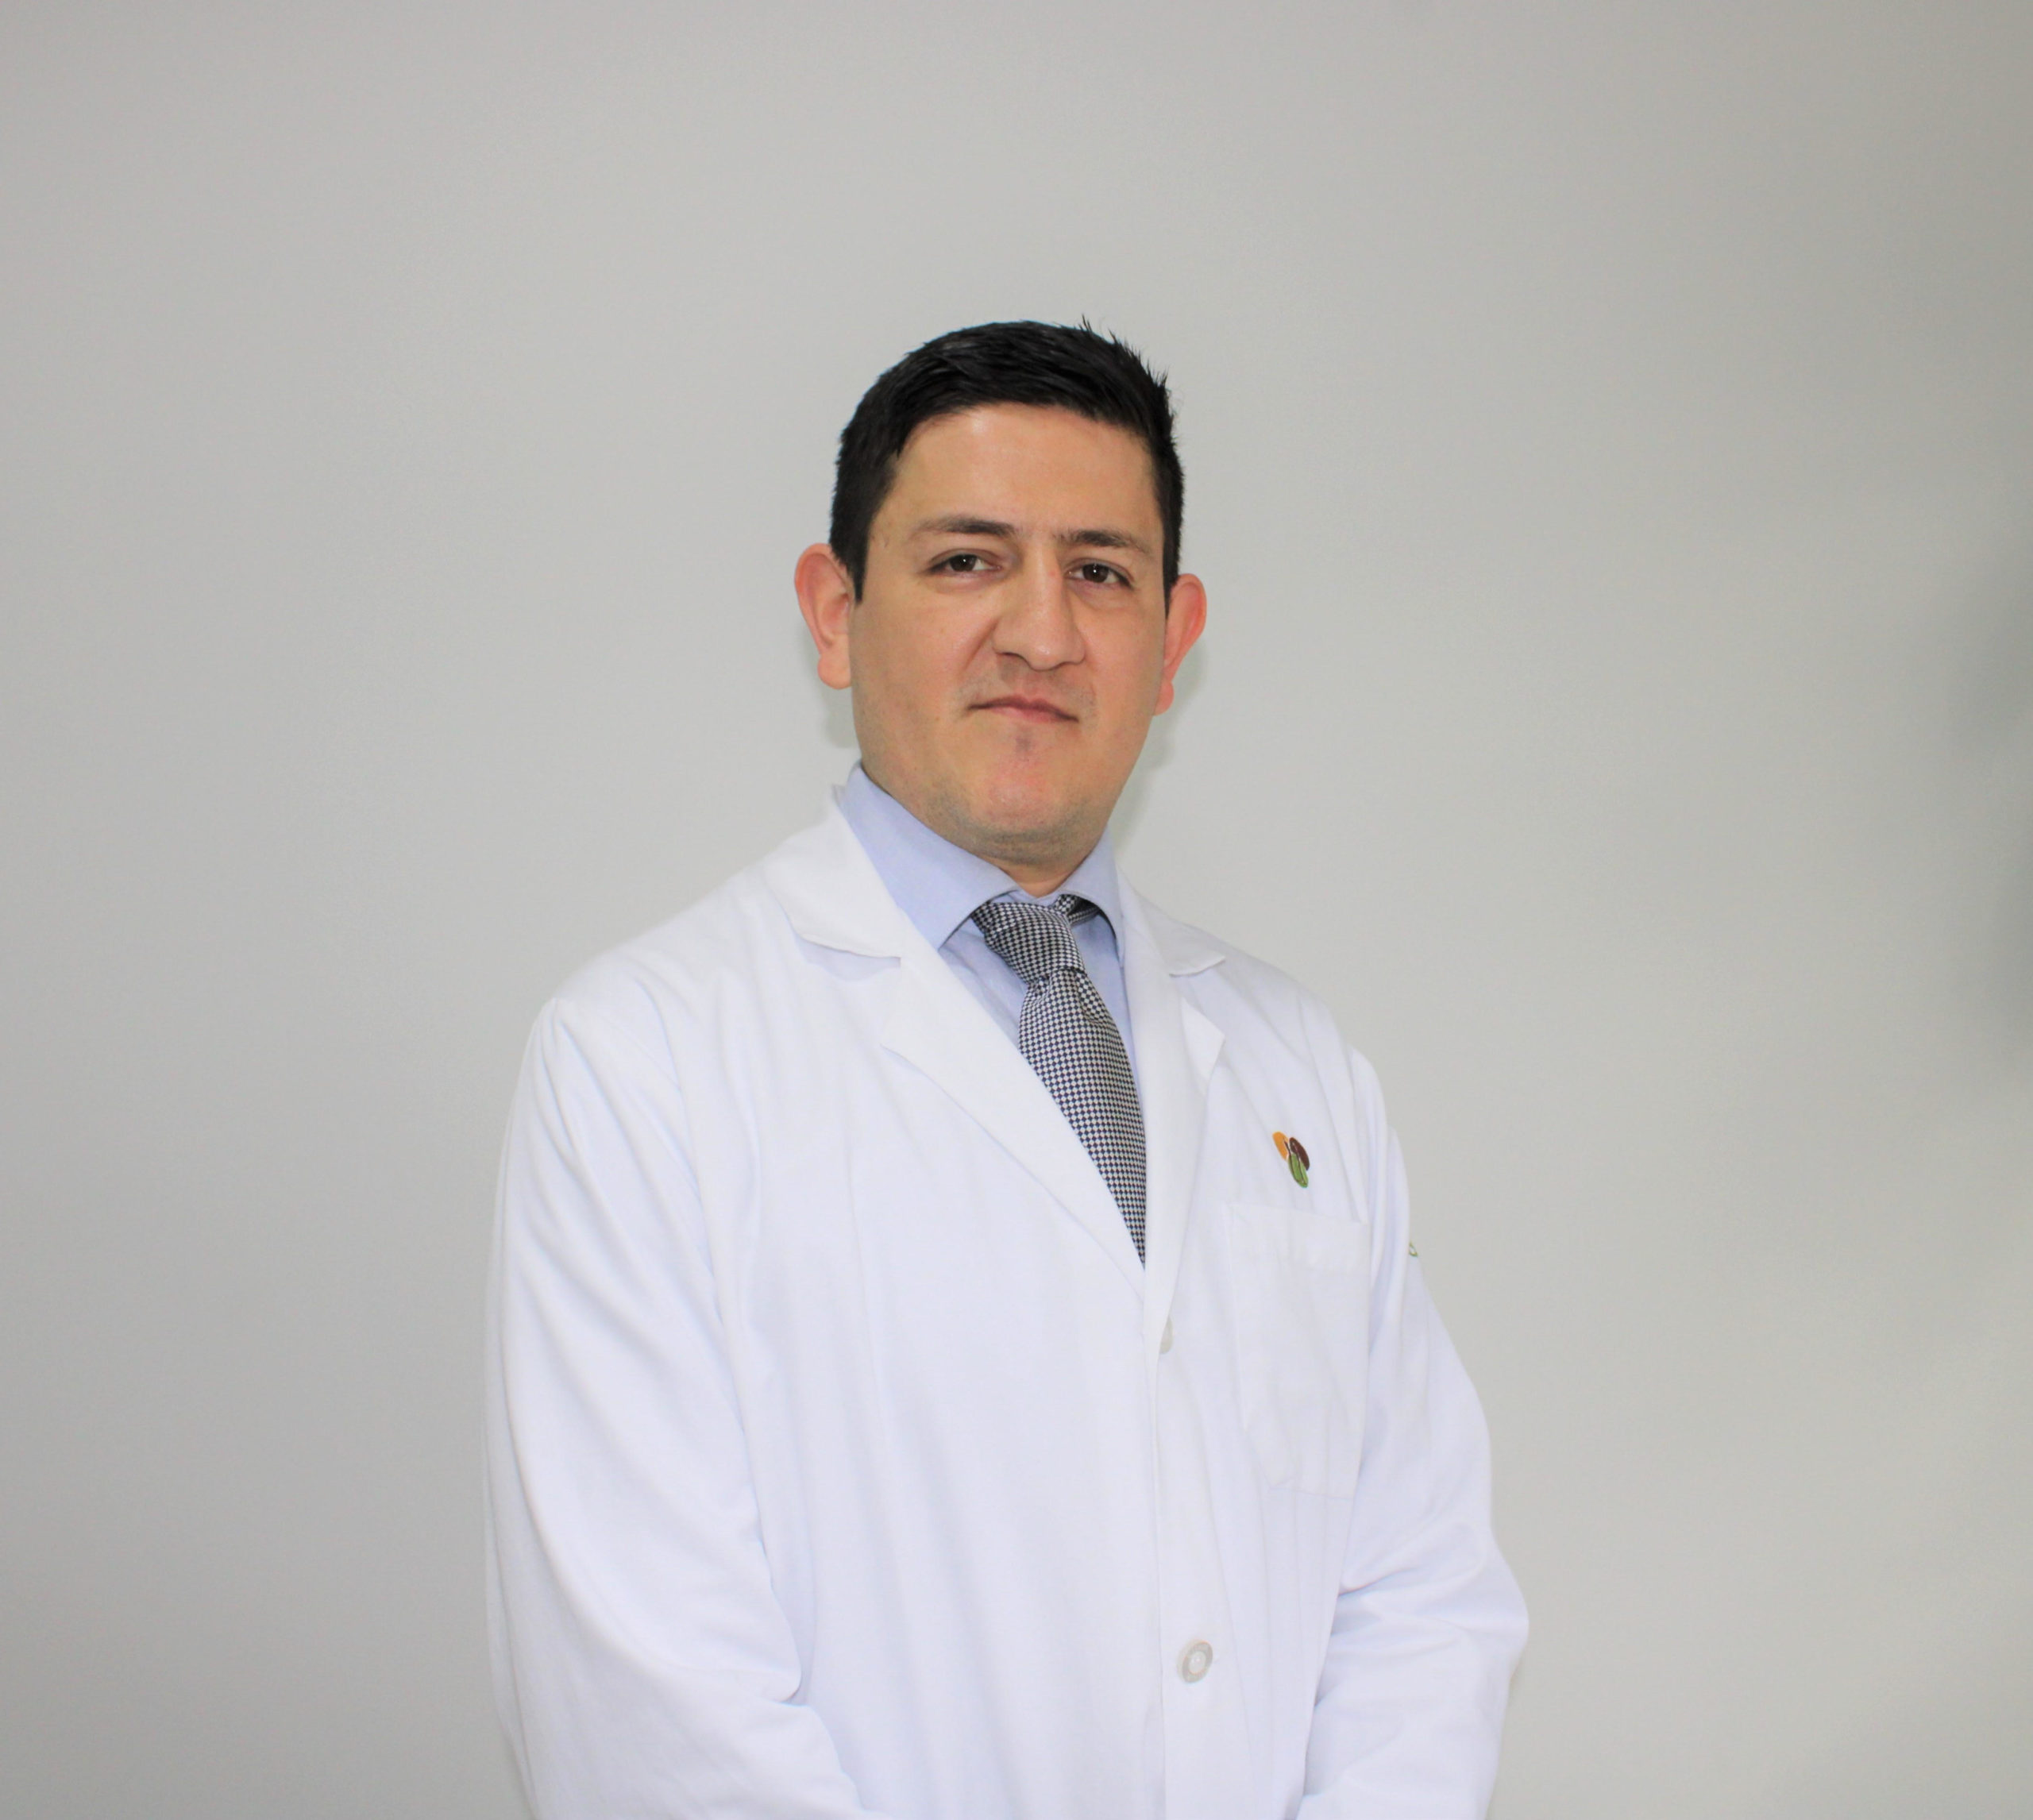 Dr. Antonio Cota, MD.